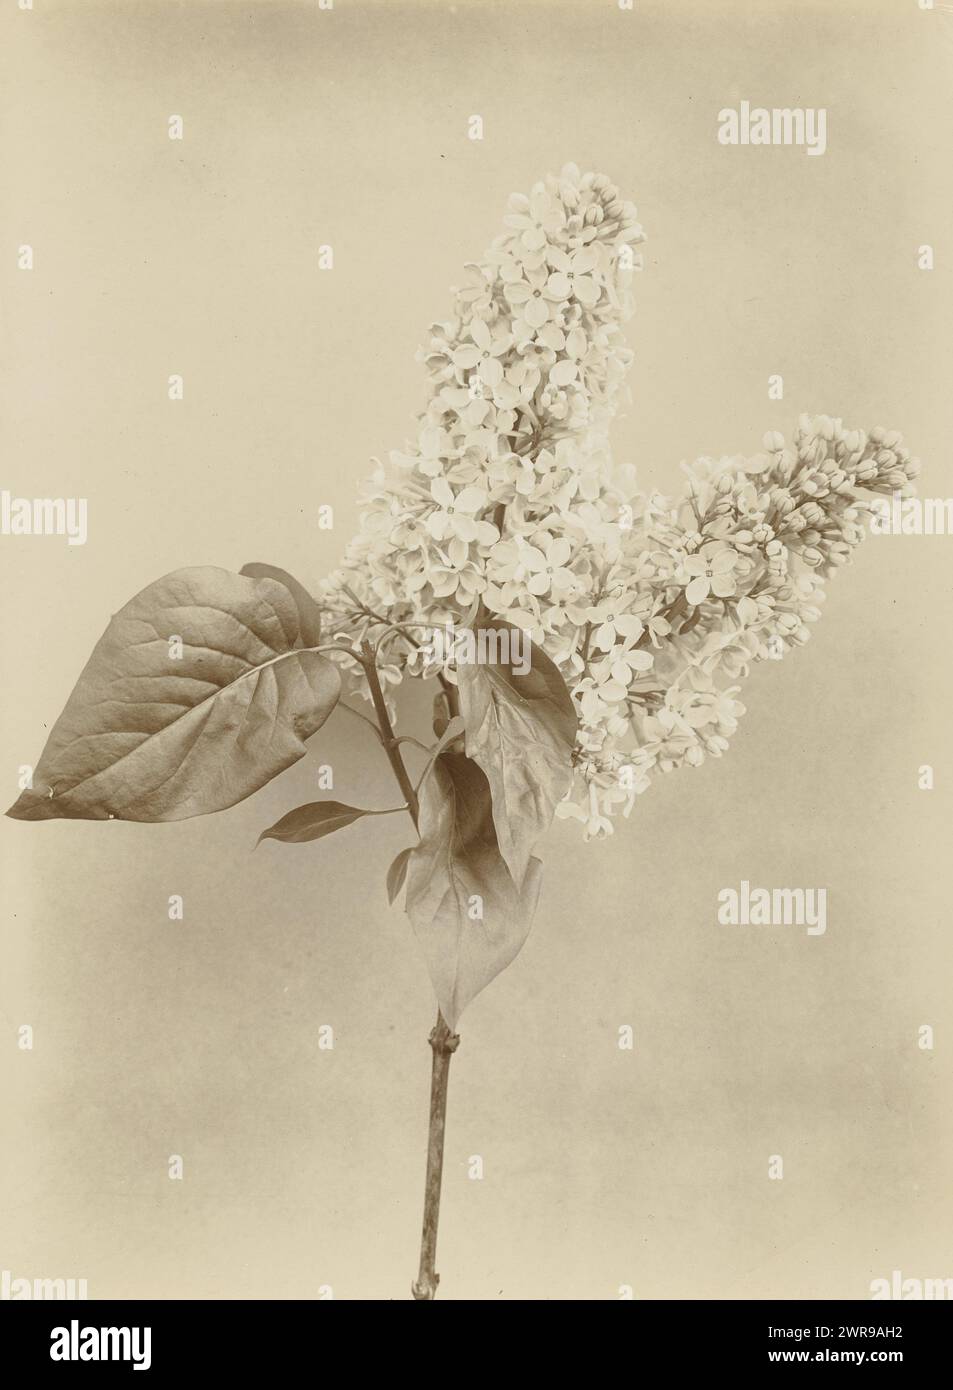 Branche de lilas, floraison branche de lilas Charles, Richard Tepe, pays-Bas, c. 1900 - c. 1930, support photographique, hauteur 223 mm × largeur 164 mm, photographie Banque D'Images